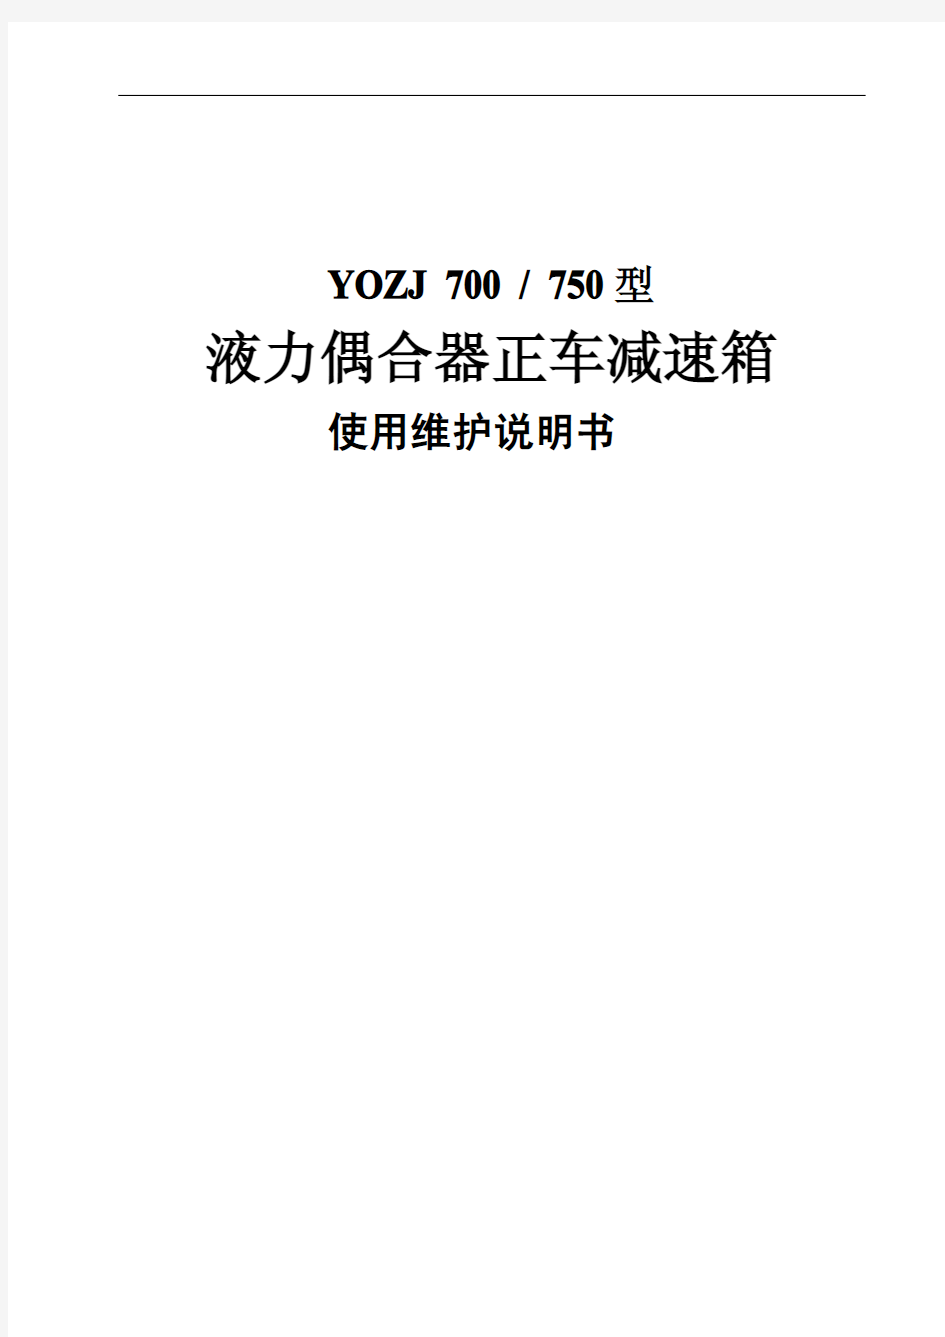 YO Z J 液力偶合器 正车 减速箱使用维护说明书 